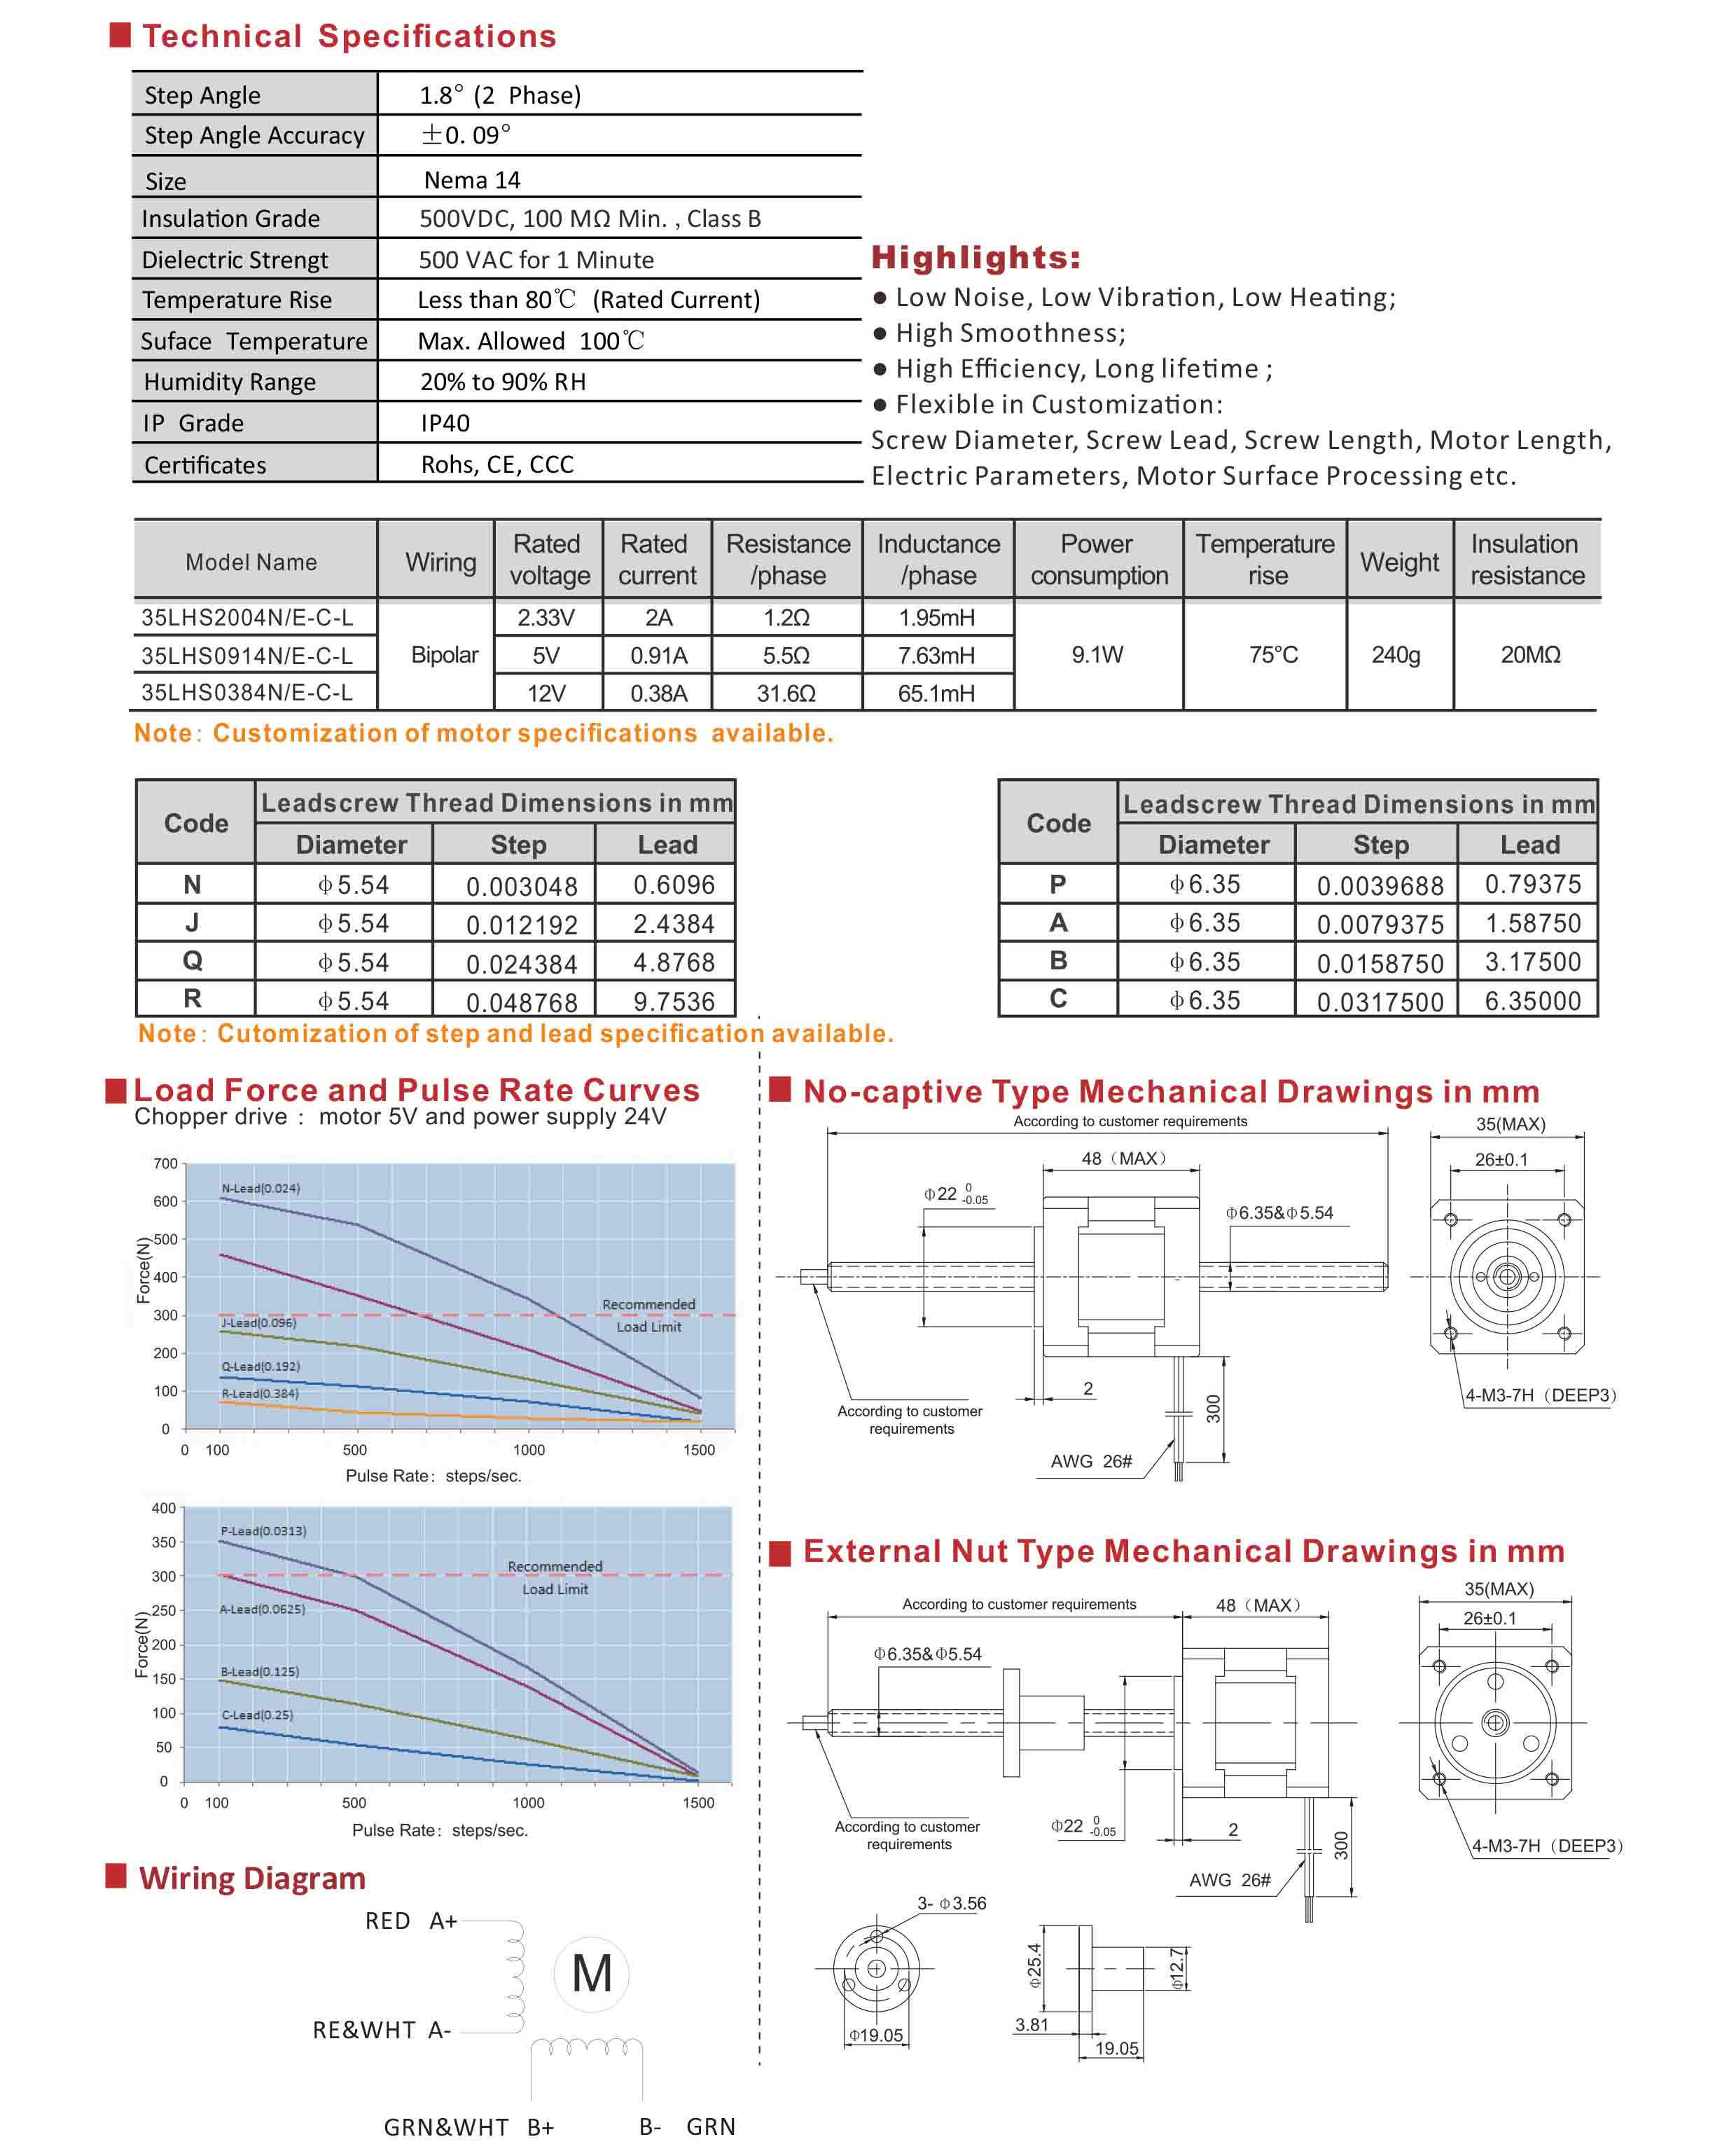 35LHS2004 0914 0384 Series Hybrid Linear Stepper Motors Data Sheet.jpg